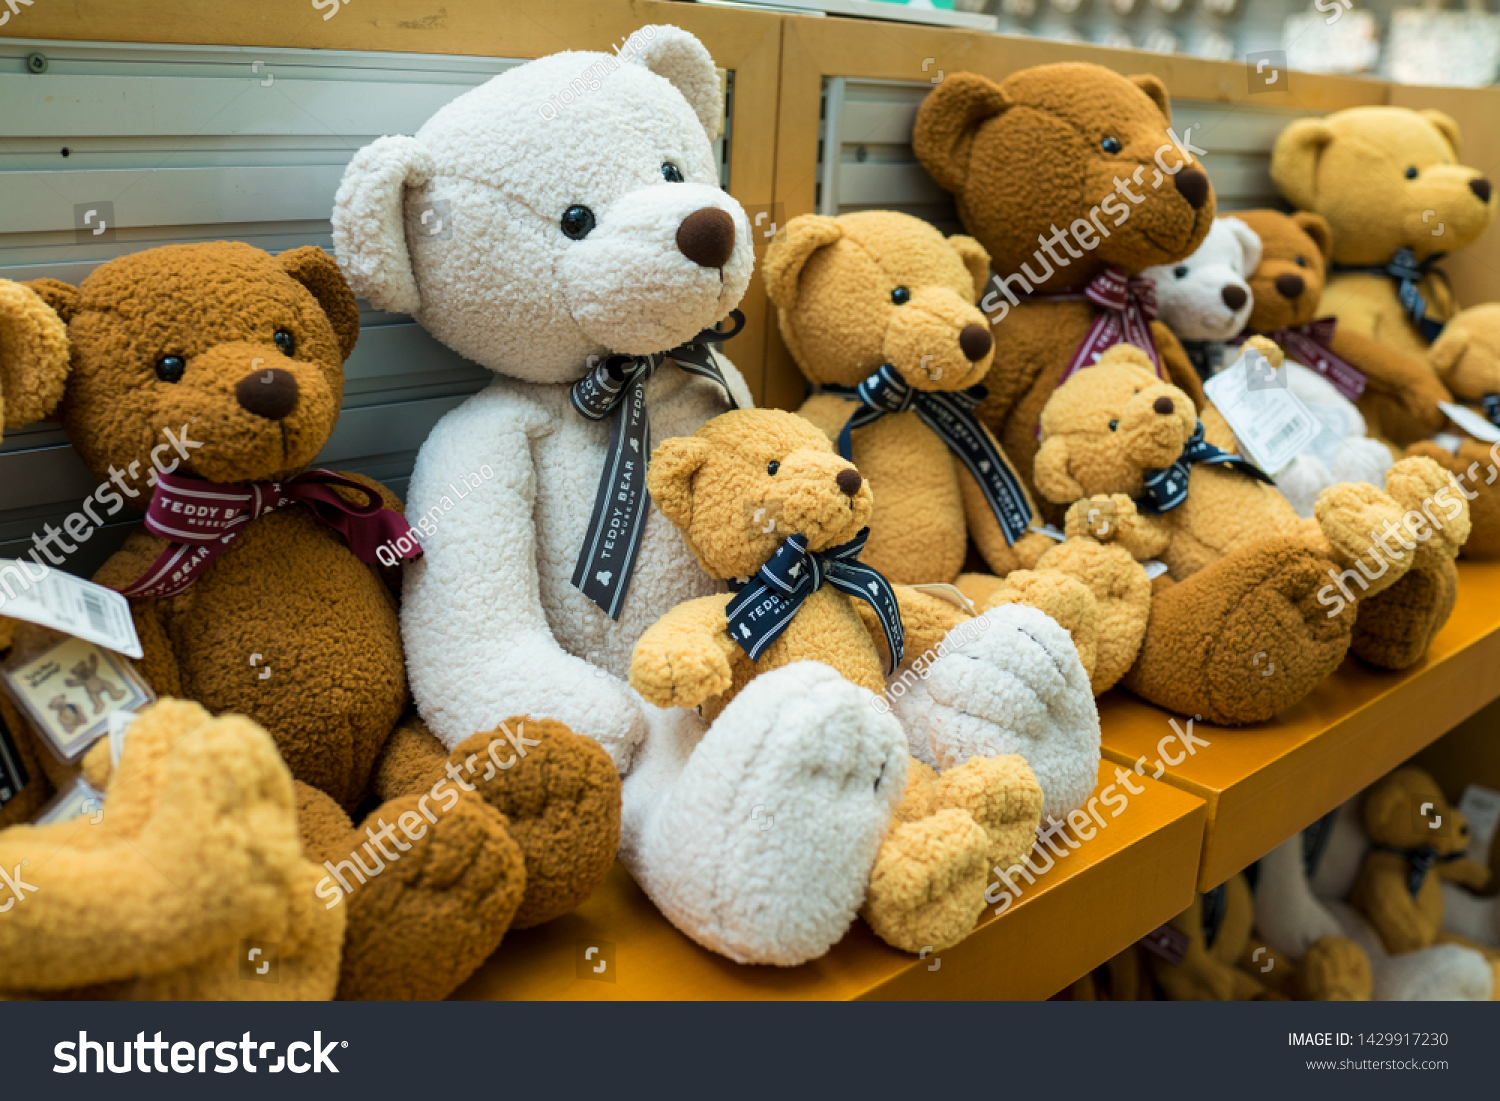 teddy bear gift shop